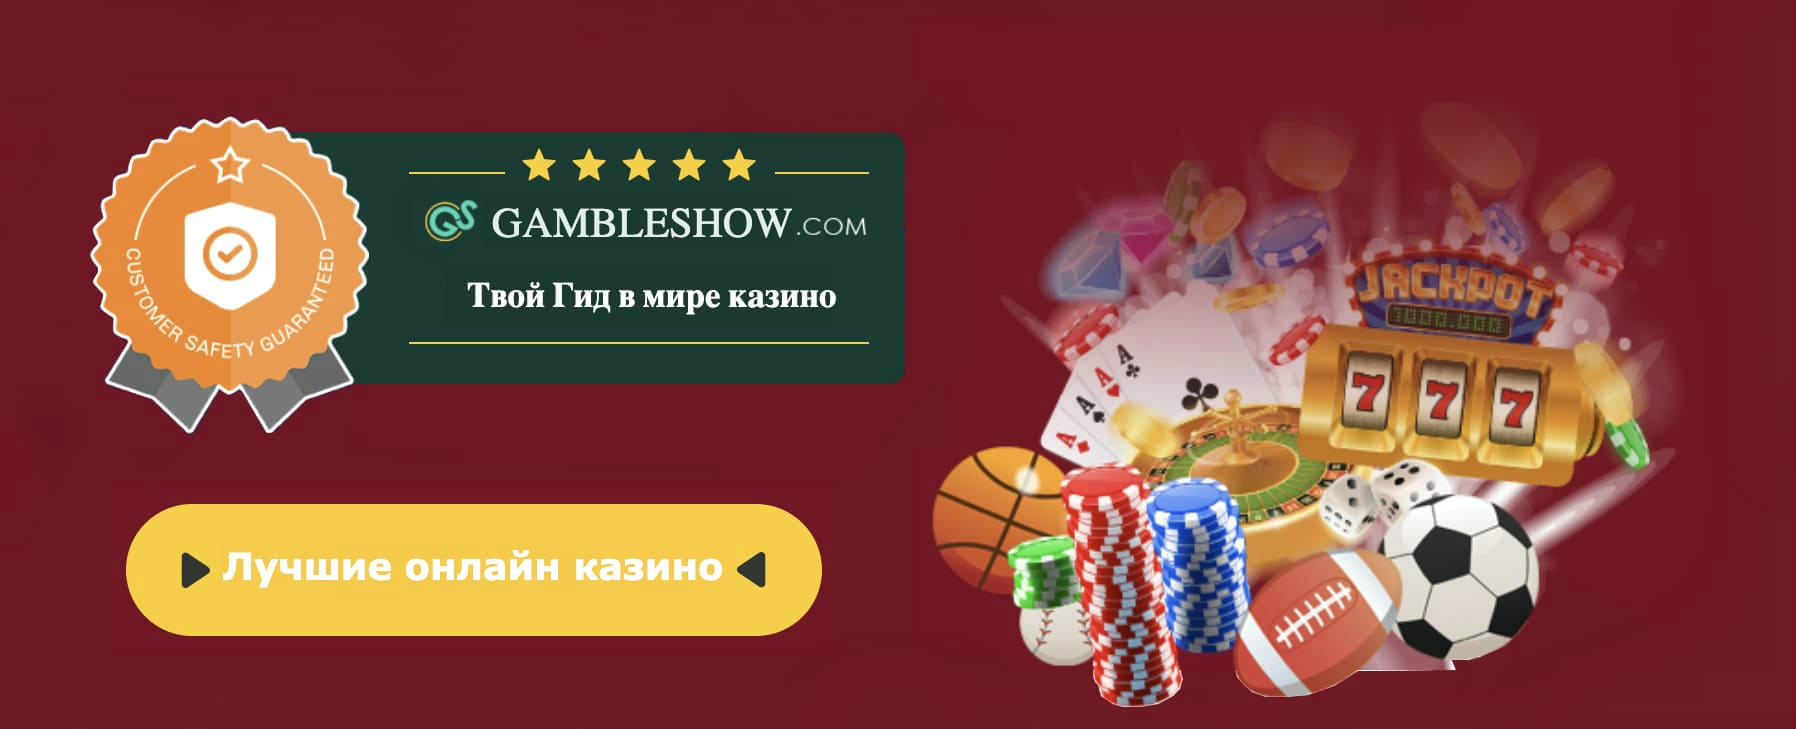 Melhor casino online bitcoin sverige